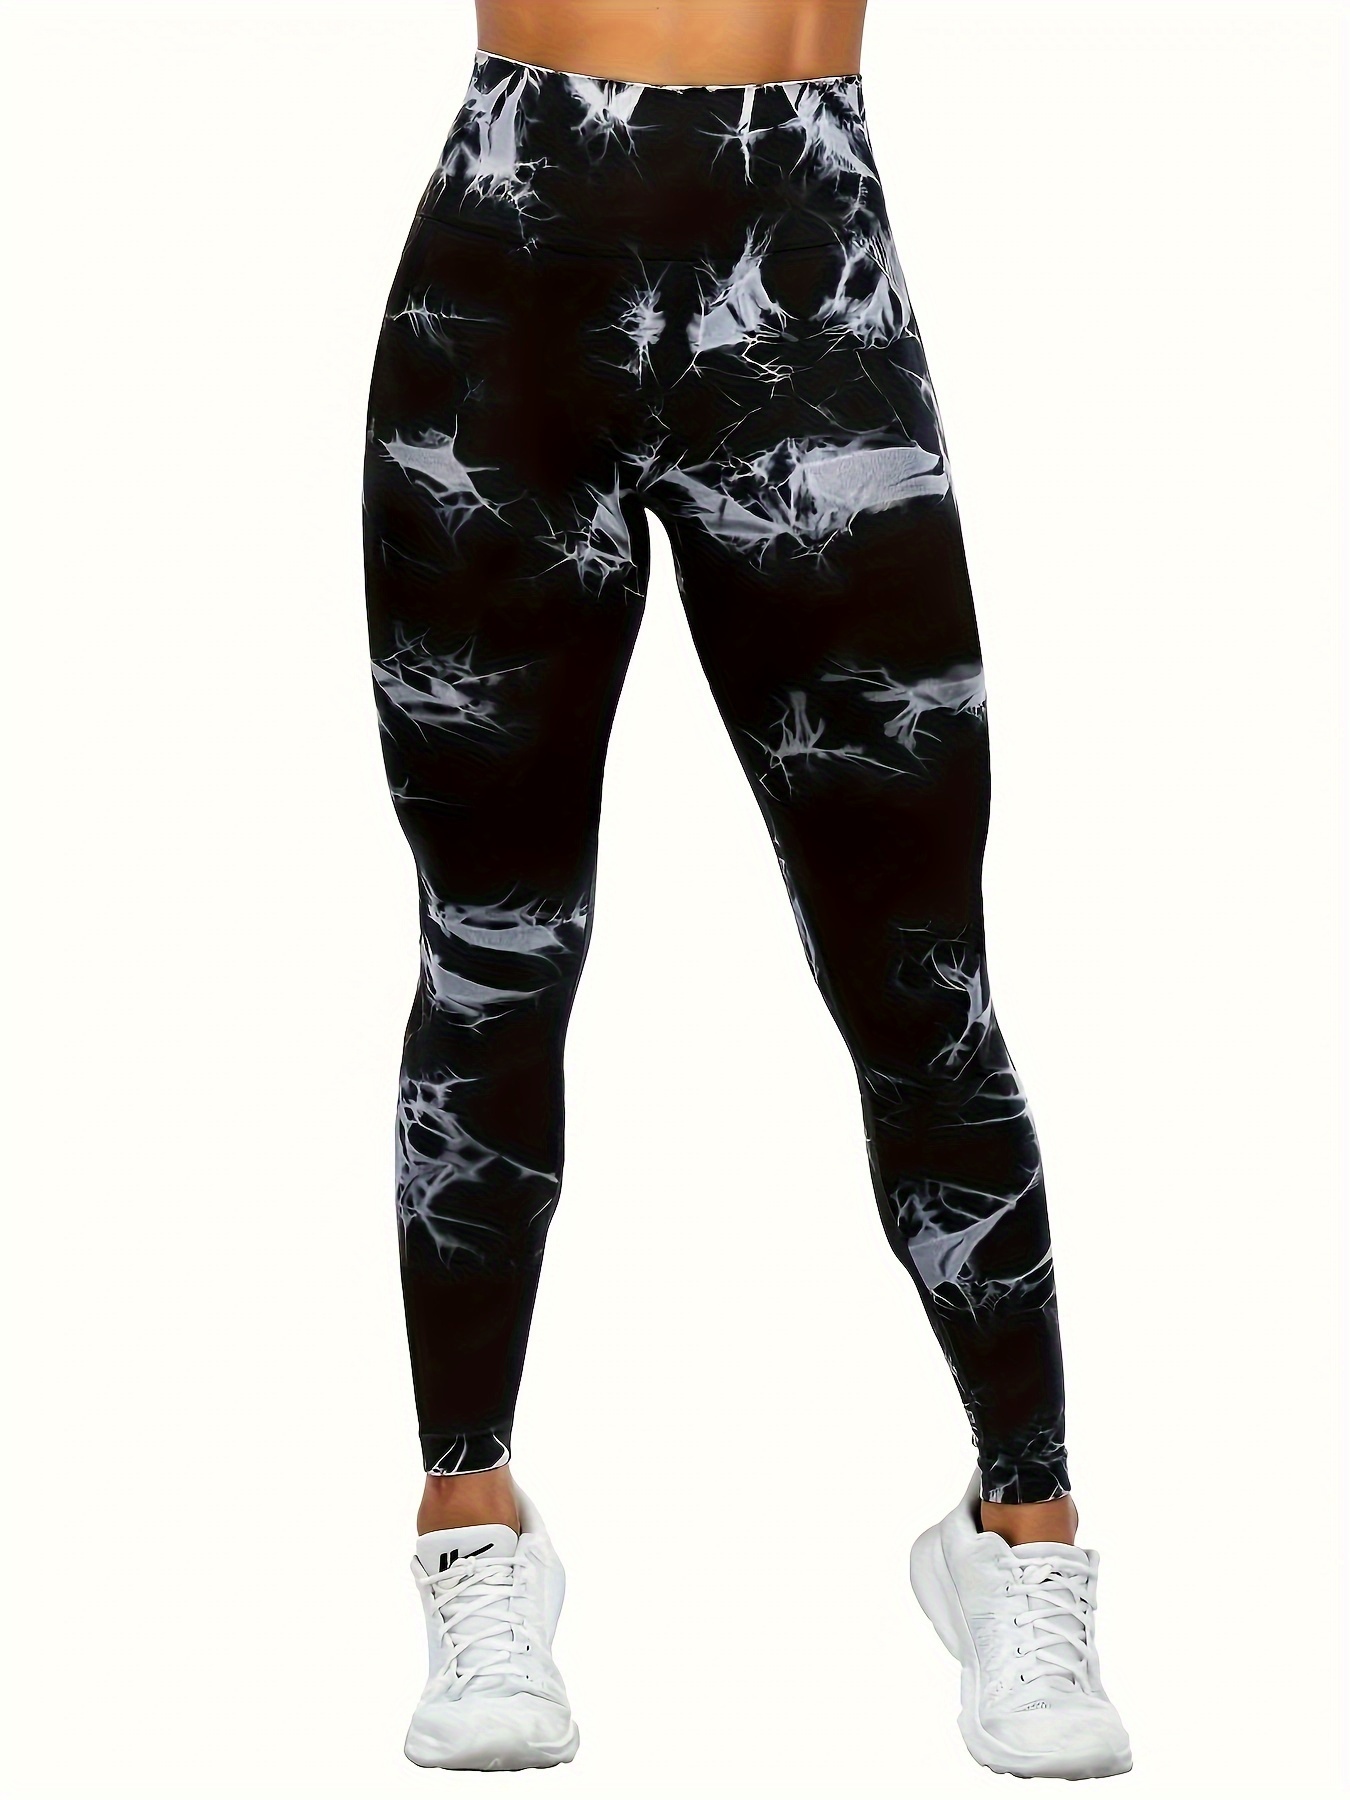 Tie Dye Leggings Women, Spiral Printed Yoga Pants Cute Graphic Workout –  Starcove Fashion